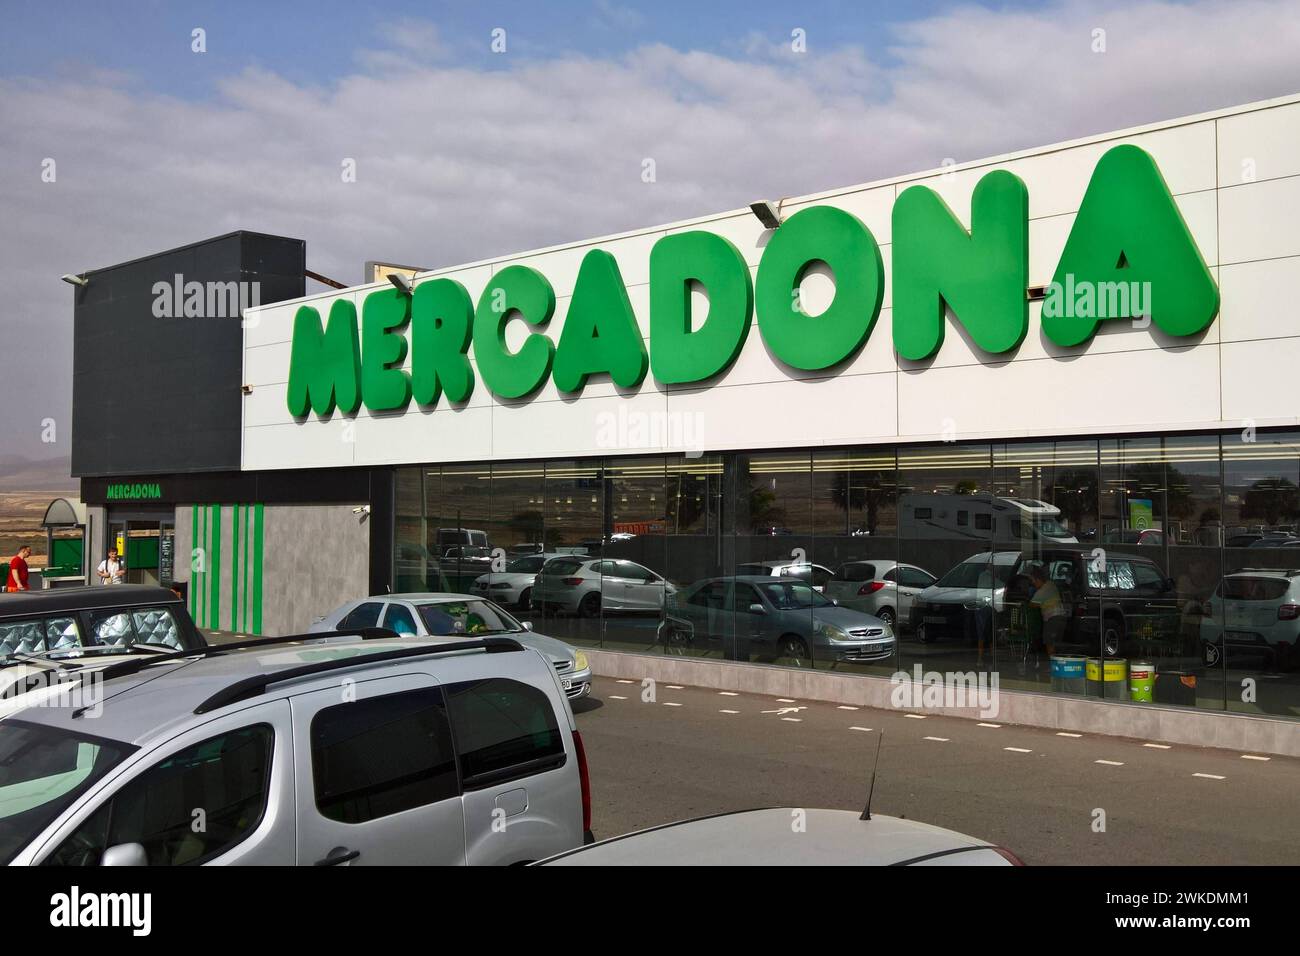 Mercadona S.A. ist die grösste Supermarktkette in spagnolo, der Hauptsitz befindet sich a Valencia. In den Märkten und im Internet vertreibt das Unternehmen Lebensmittel und Güter des täglichen Bedarfs. DAS Unternehmen befindet sich a Familienbesitz. In allen Provinzen des Landes vertreten gibt es insgesamt 1636 Filialen - Stand Oktober 2020 - mit durchschnittlich 1300 Quadratmetern Verkaufsfläche. Der Marktanteil von Mercadona in Spanien liegt bei über 22 Prozent. Foto: Marcadona Supermercado - Supermarkt auf Fuerteventura, Kanarische Inseln *** Mercadona S A è la più grande catena di supermercati Foto Stock